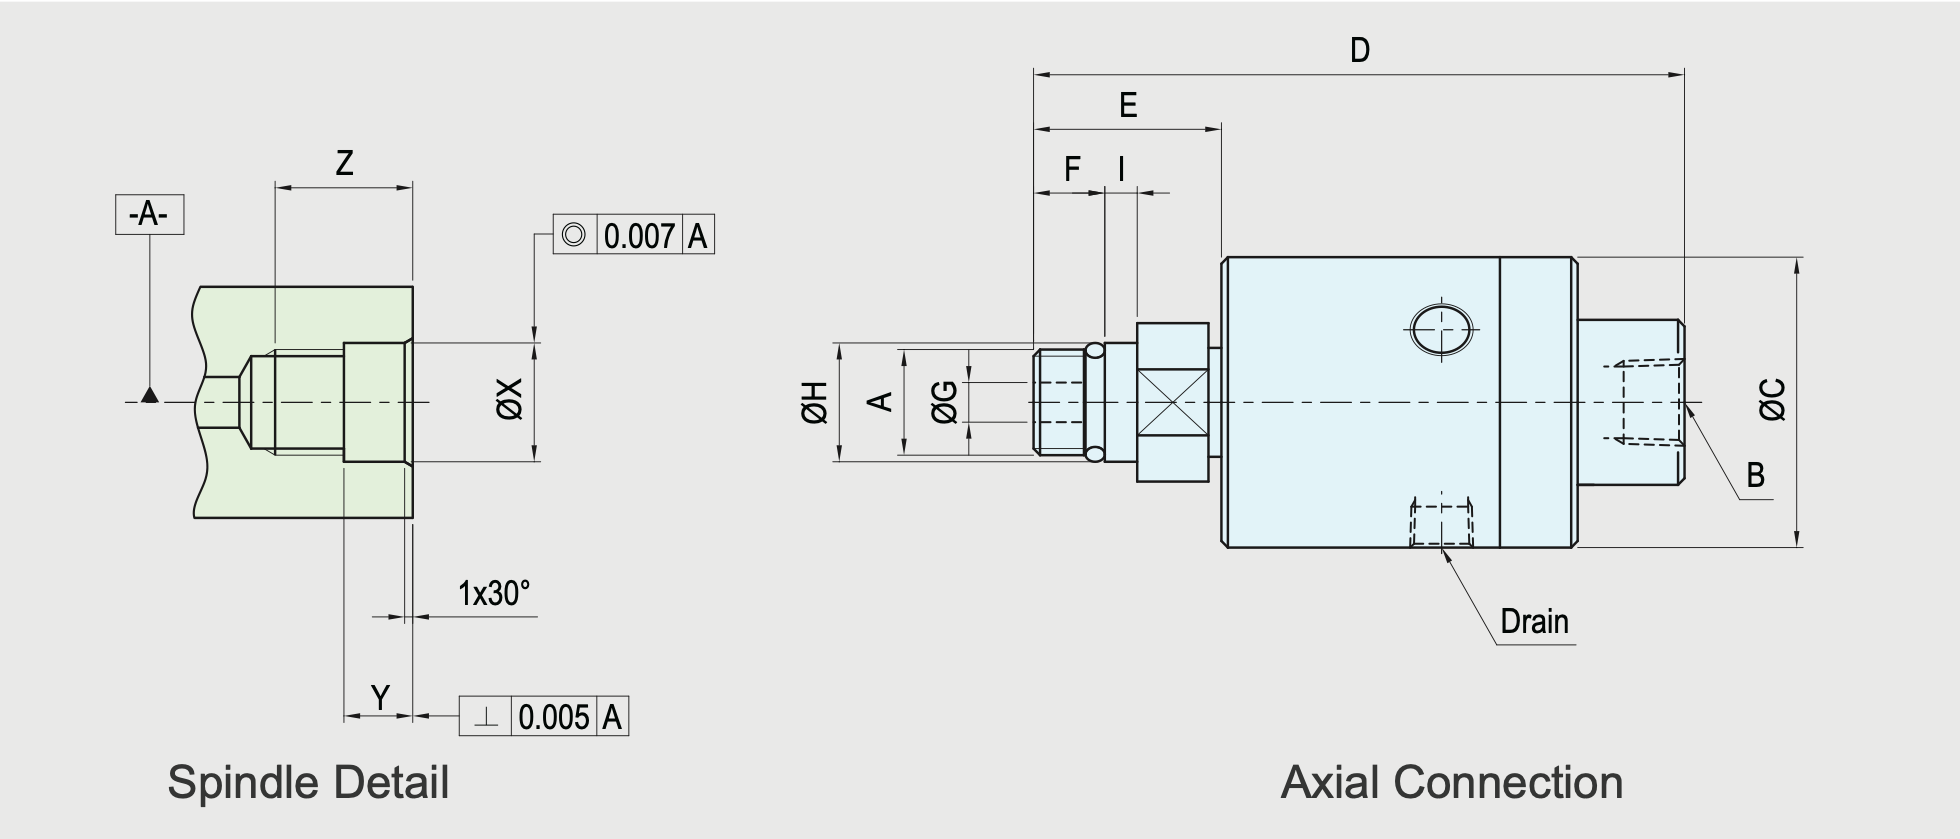 SRJ01-202 Technische Zeichnung
Axiale Drehdurchführung für Werkzeugmaschinen und Bearbeitungszentren, rotorgetragen